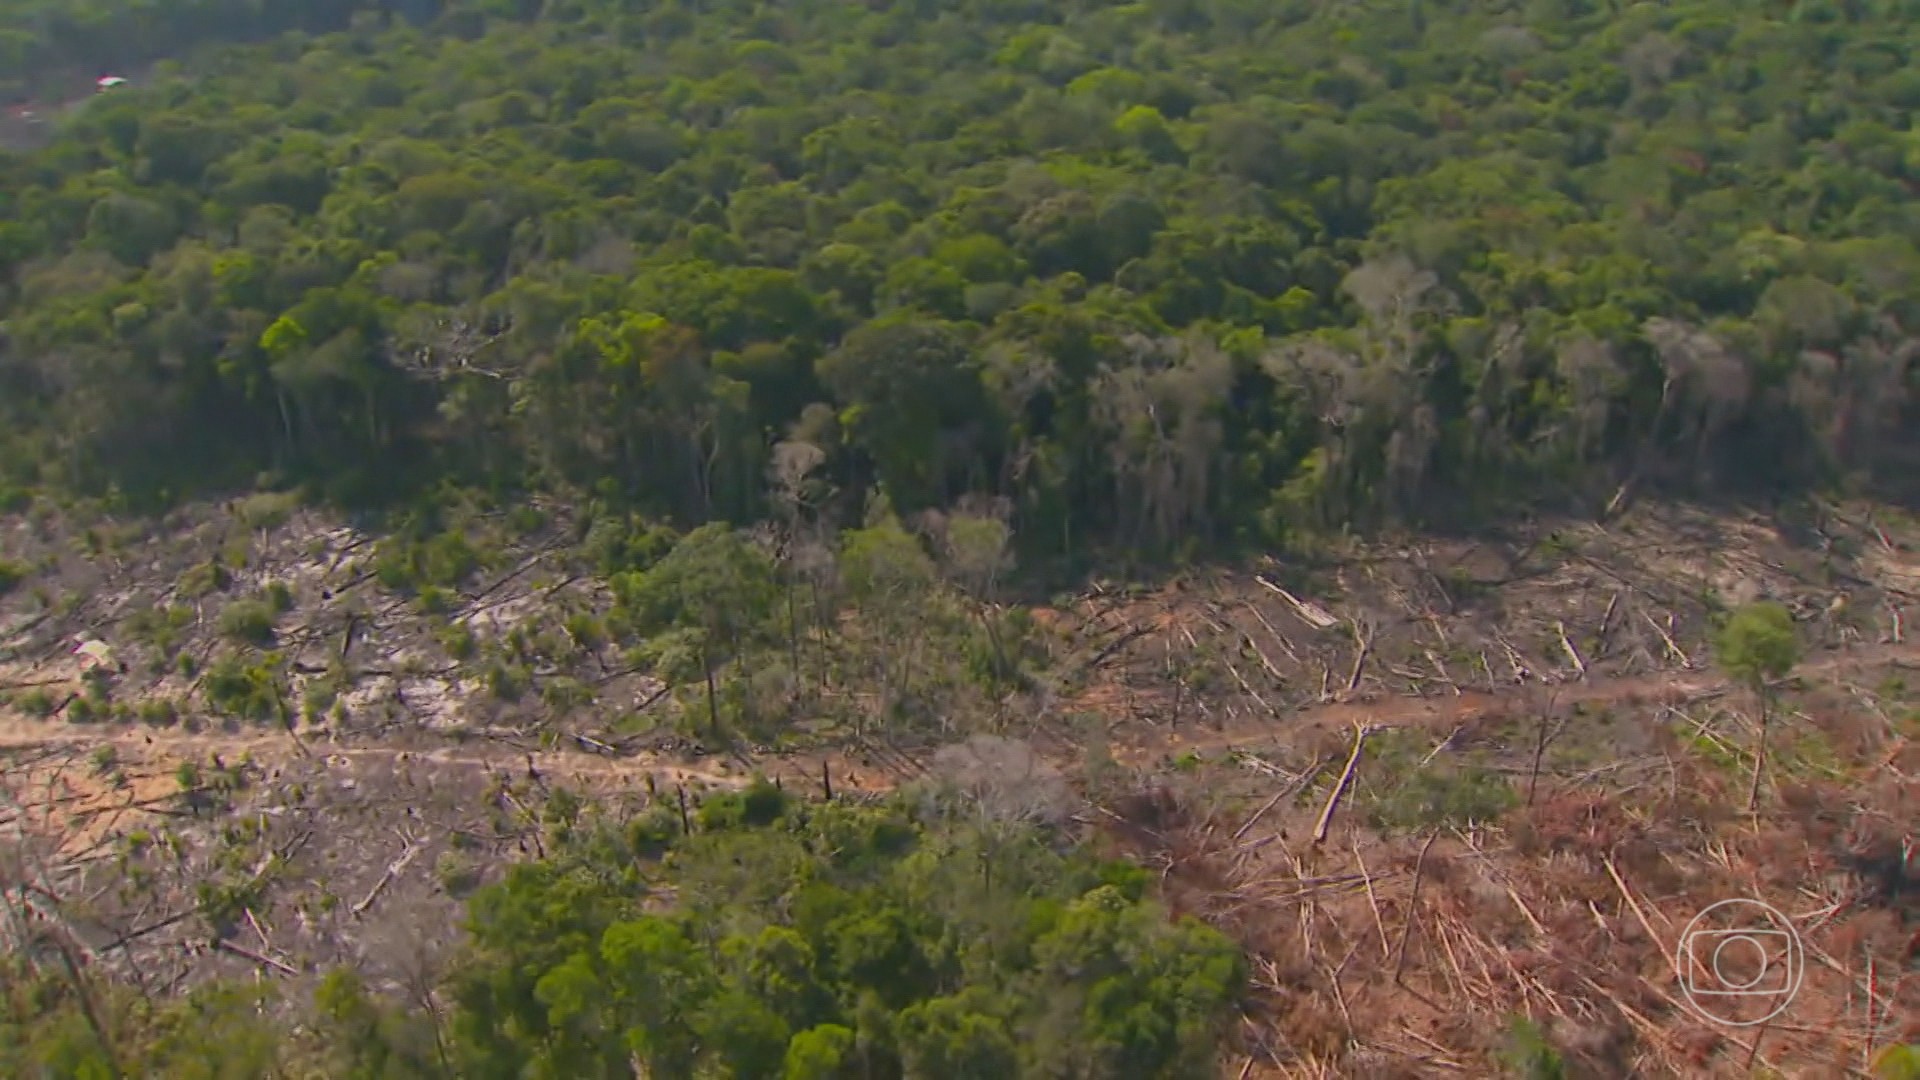 Combate a trabalho escravo e compromissos ambientais: pecuaristas aderem a projeto que busca frear desmate no Cerrado